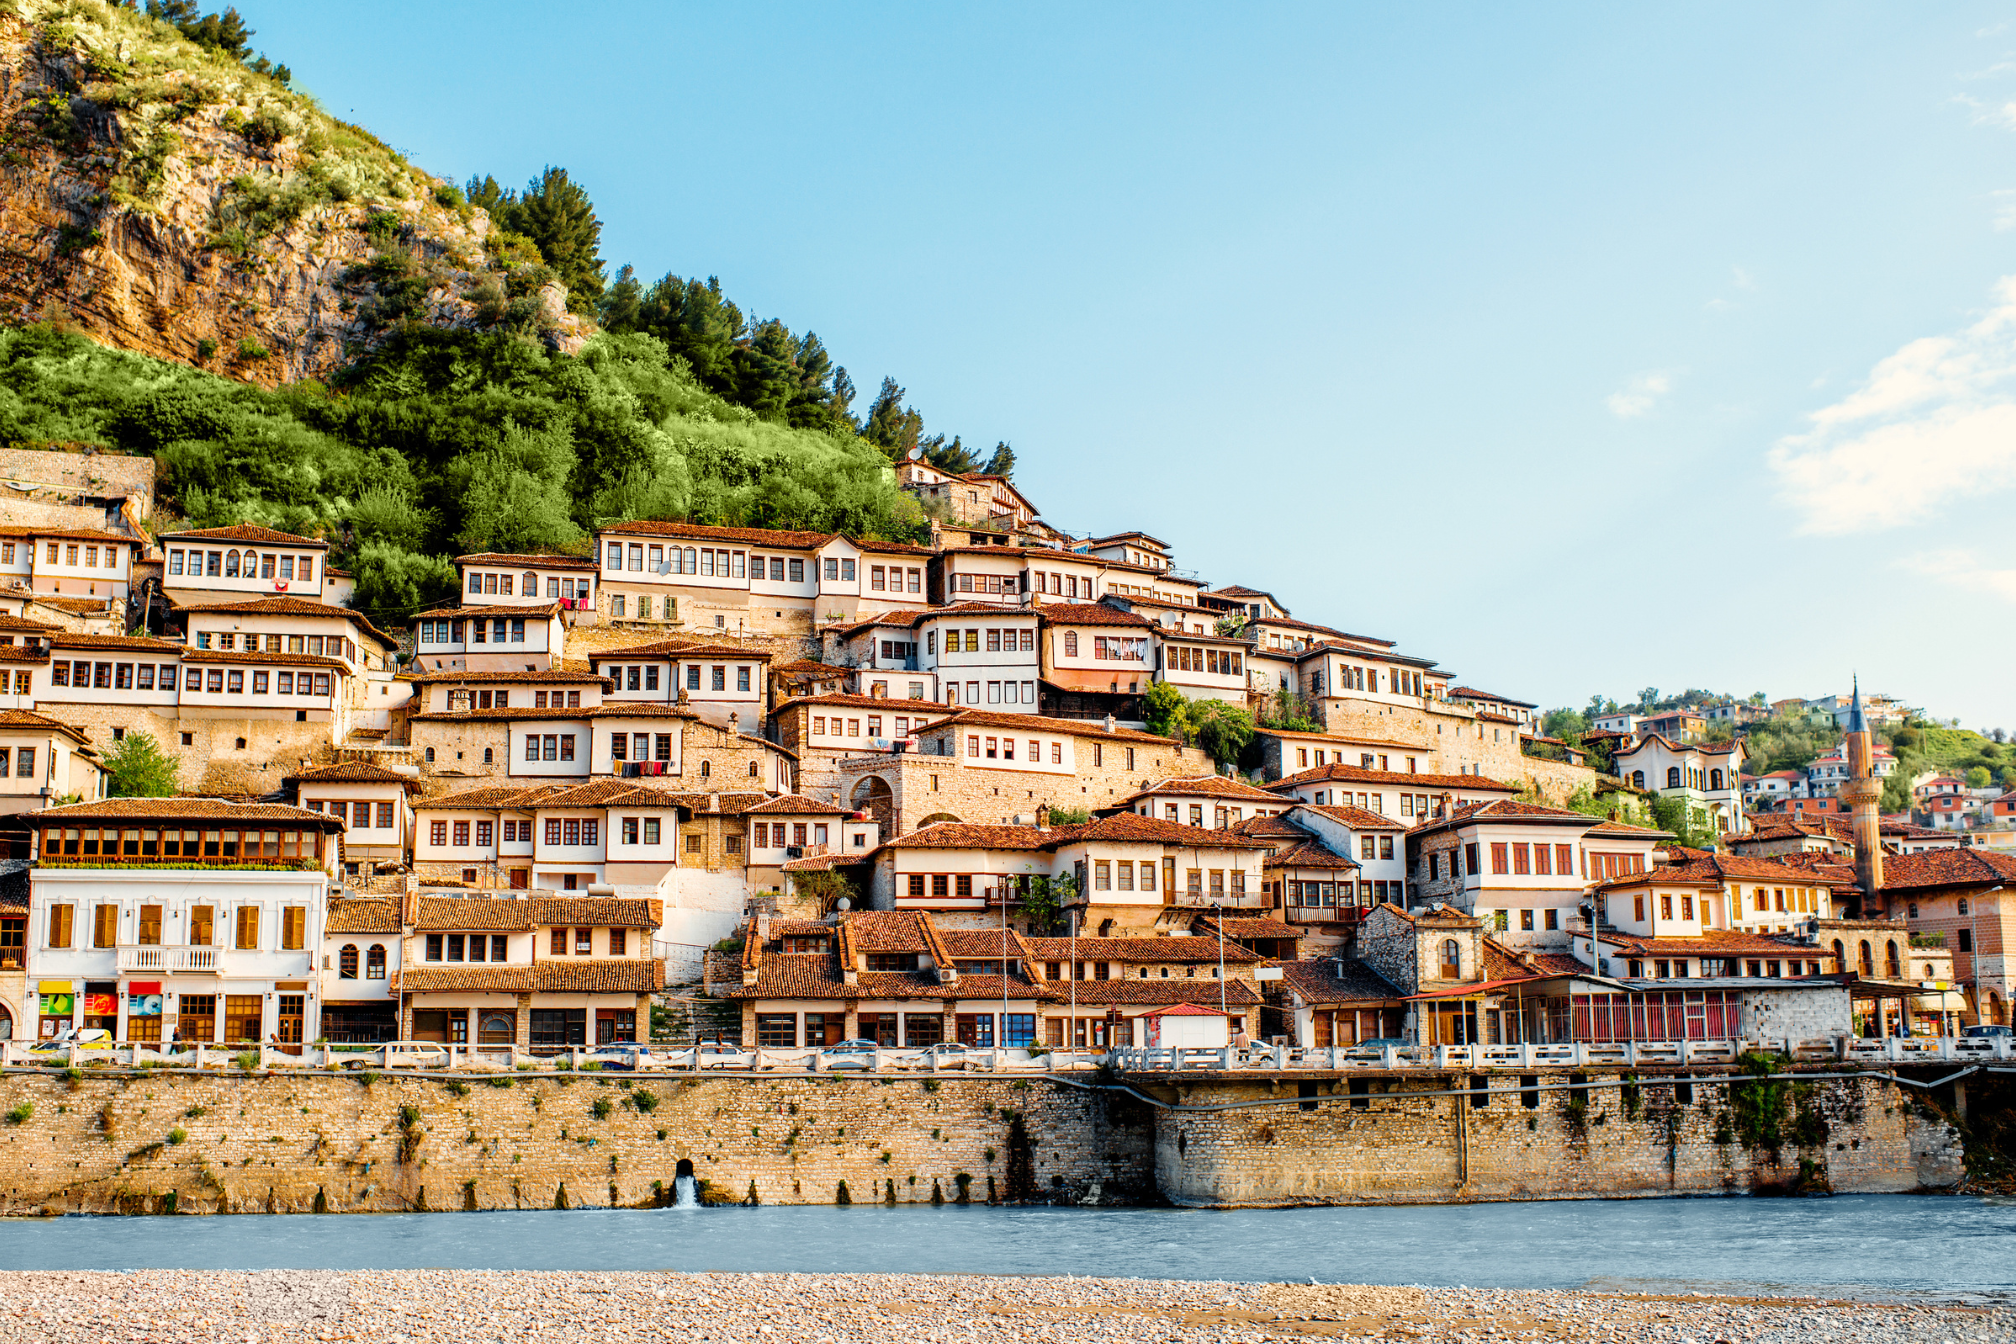 Hotele i apartamenty w Albanii